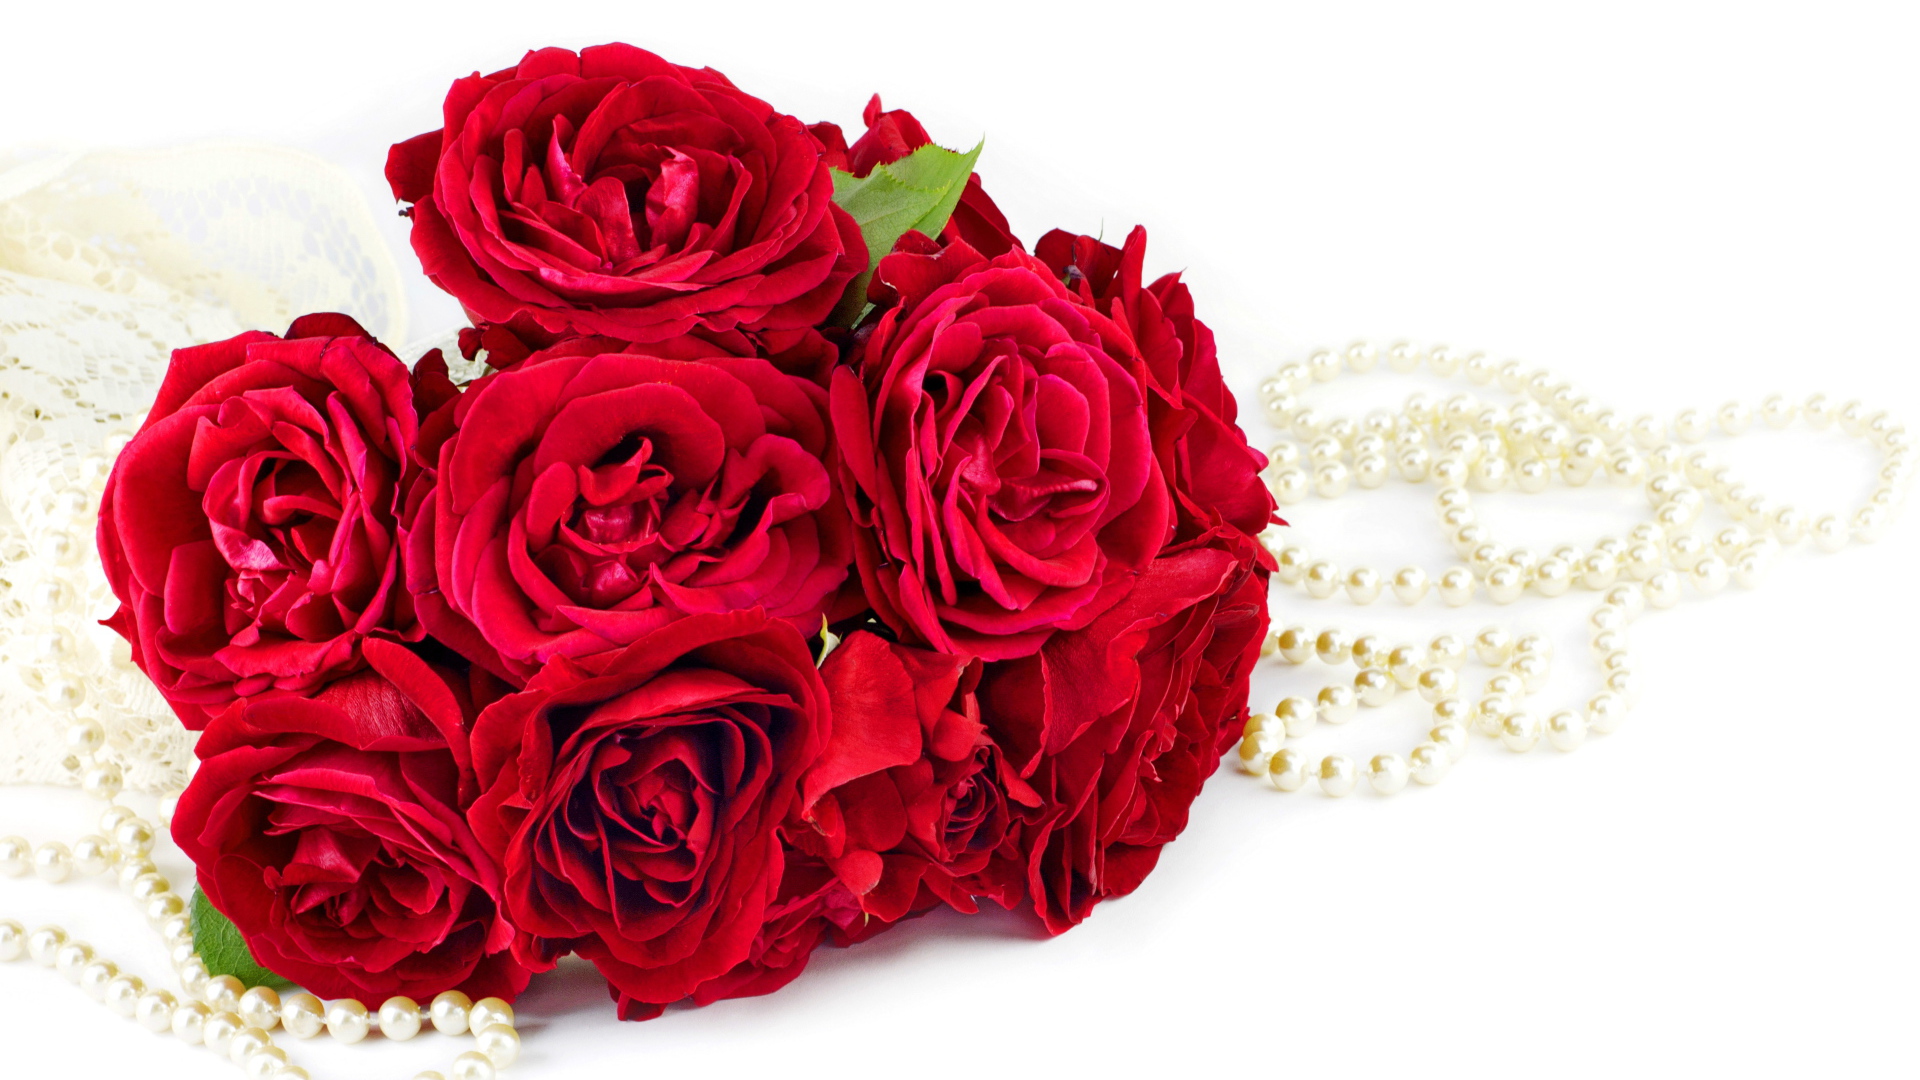 Красивый букет красных роз с бусами на белом фоне